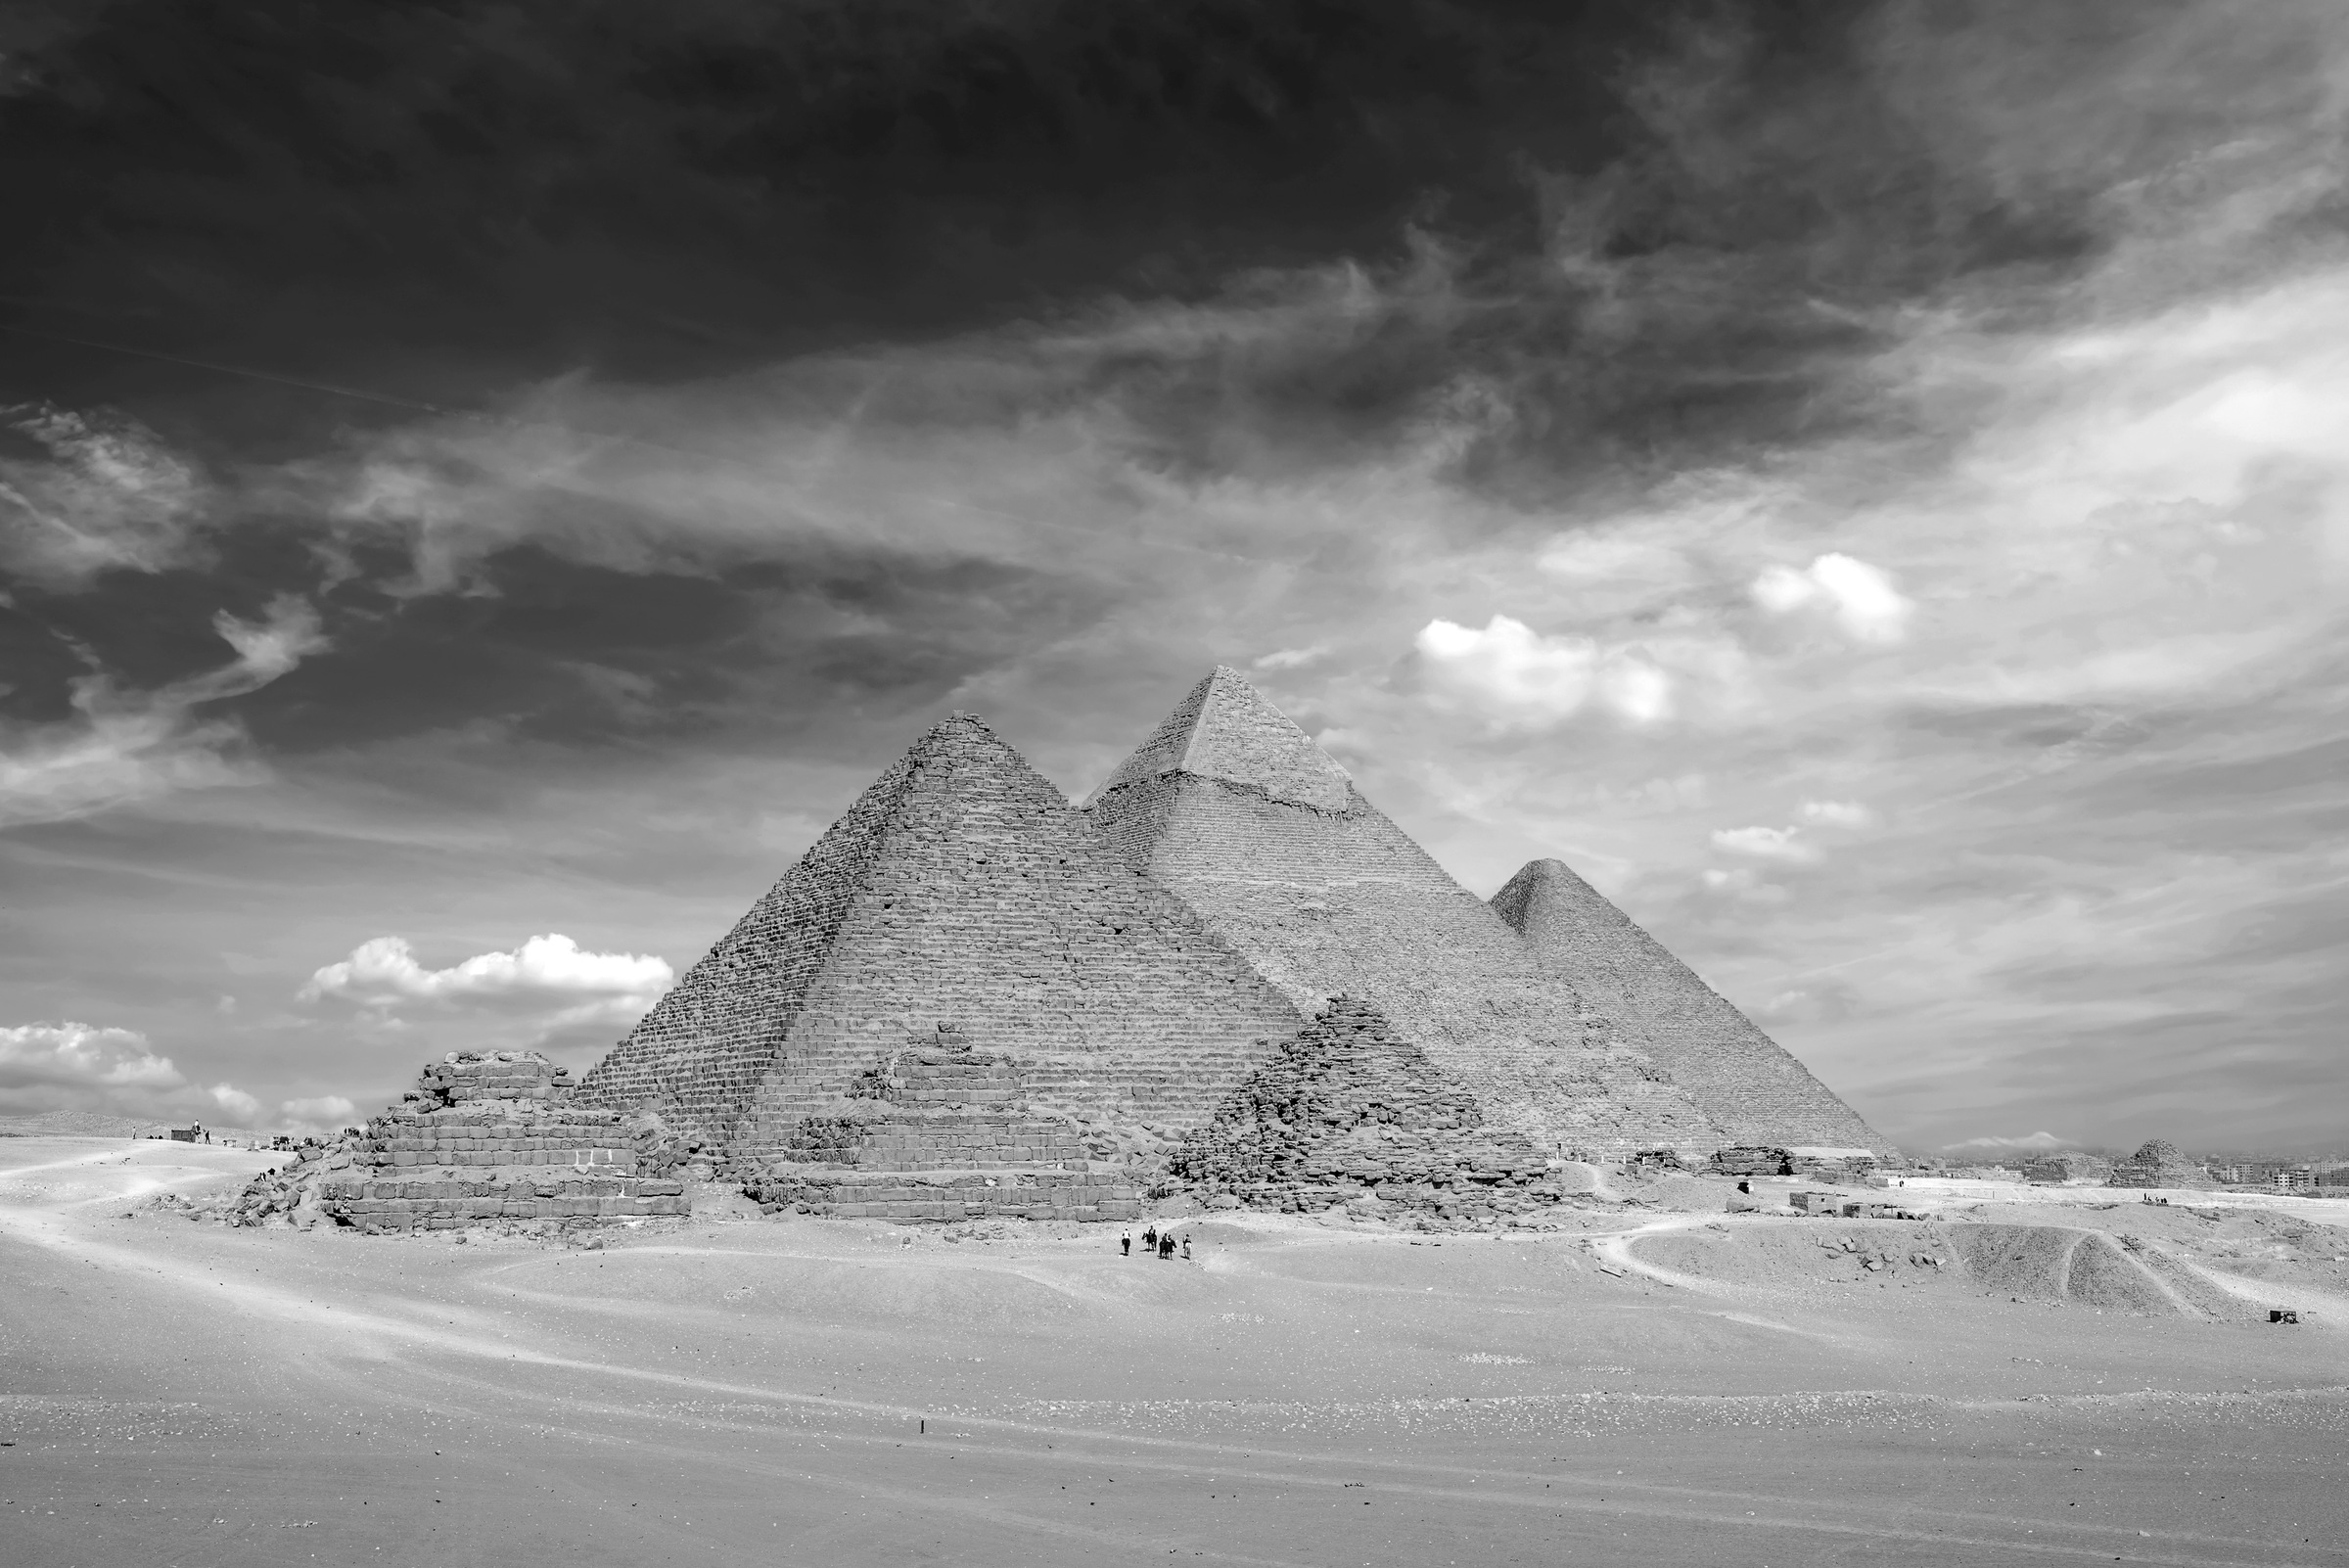 Papermoon Fototapete »Pyramiden Schwarz & Weiß«